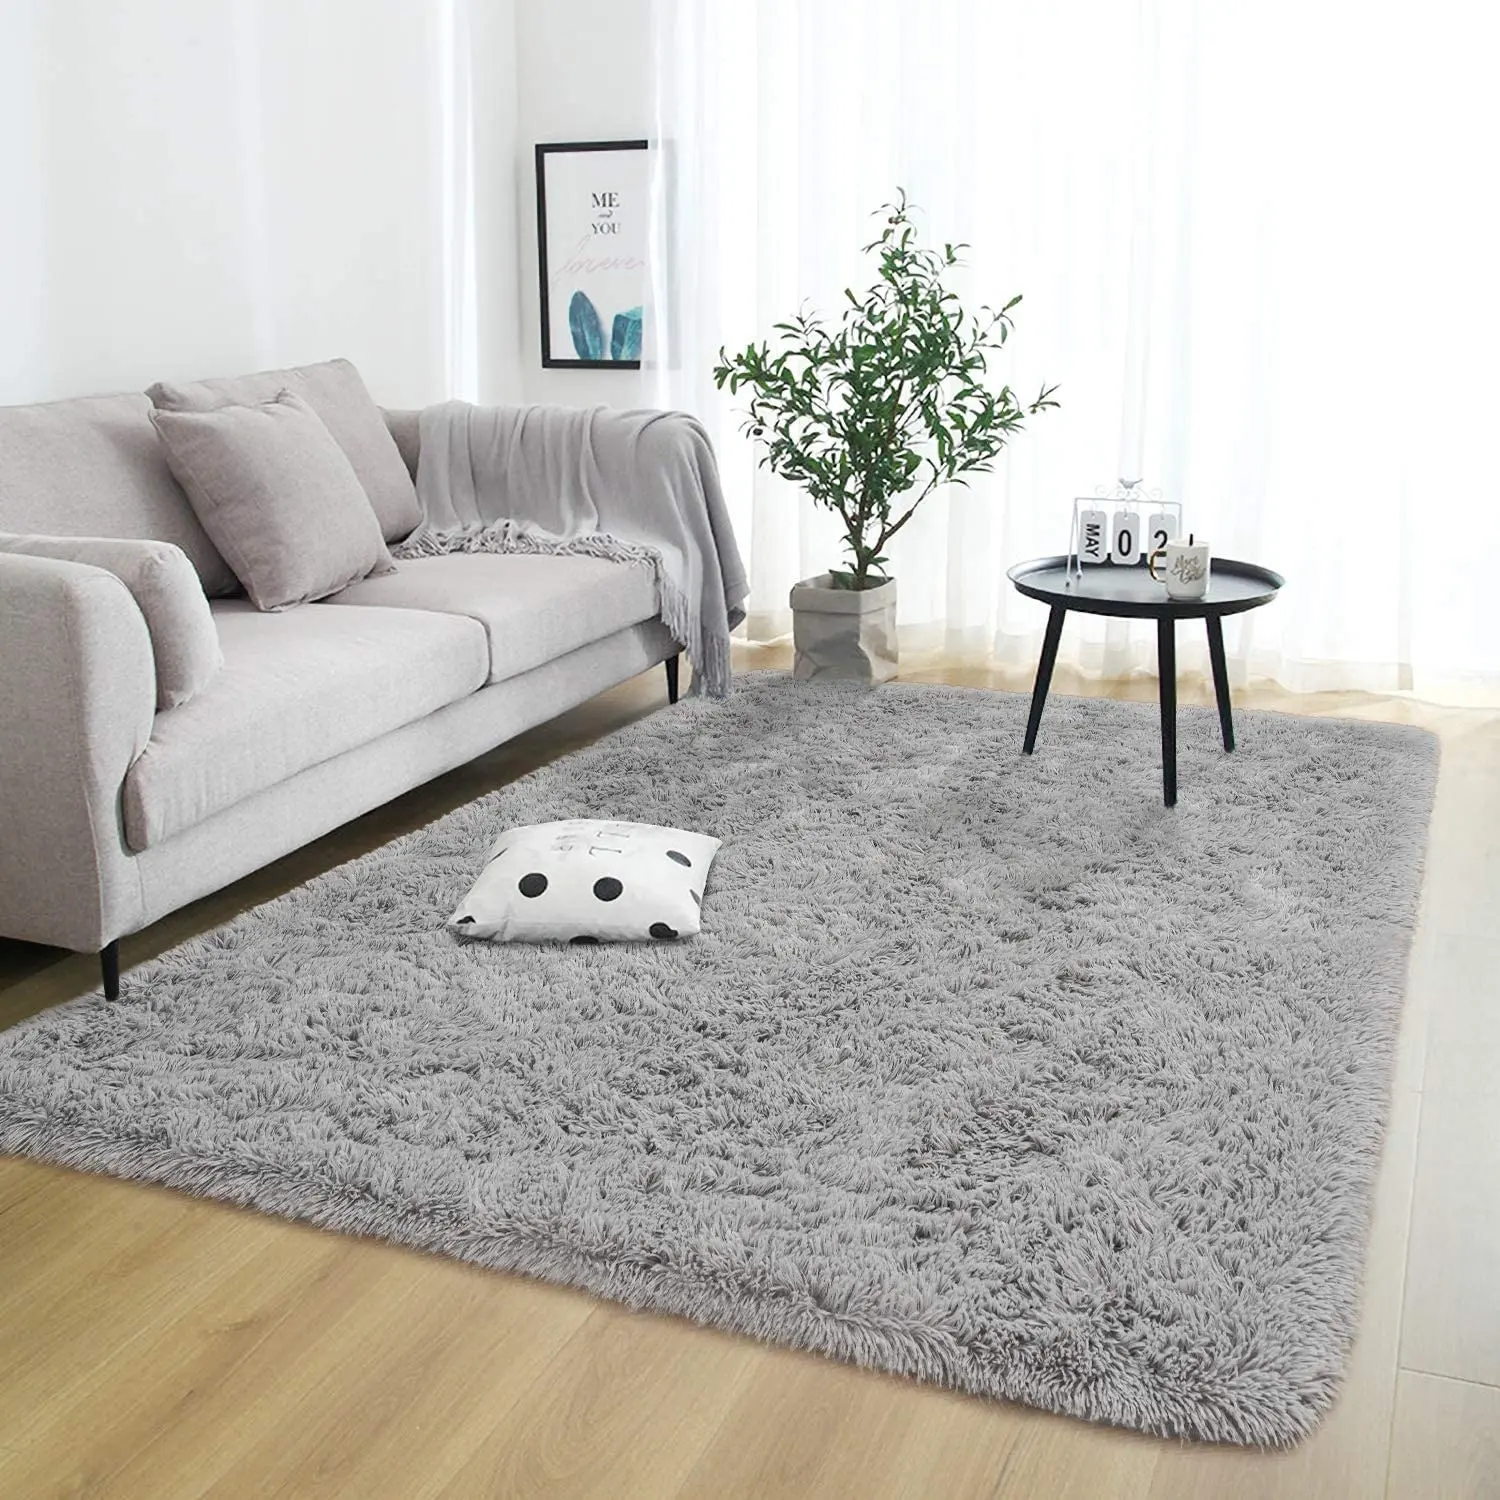 사용자 정의 디자인 봉 제 PV 벨벳 블랙 카펫 바닥 깔개 거실 장식 쉬운 청소 방수 솜 털 카펫 및 양탄자